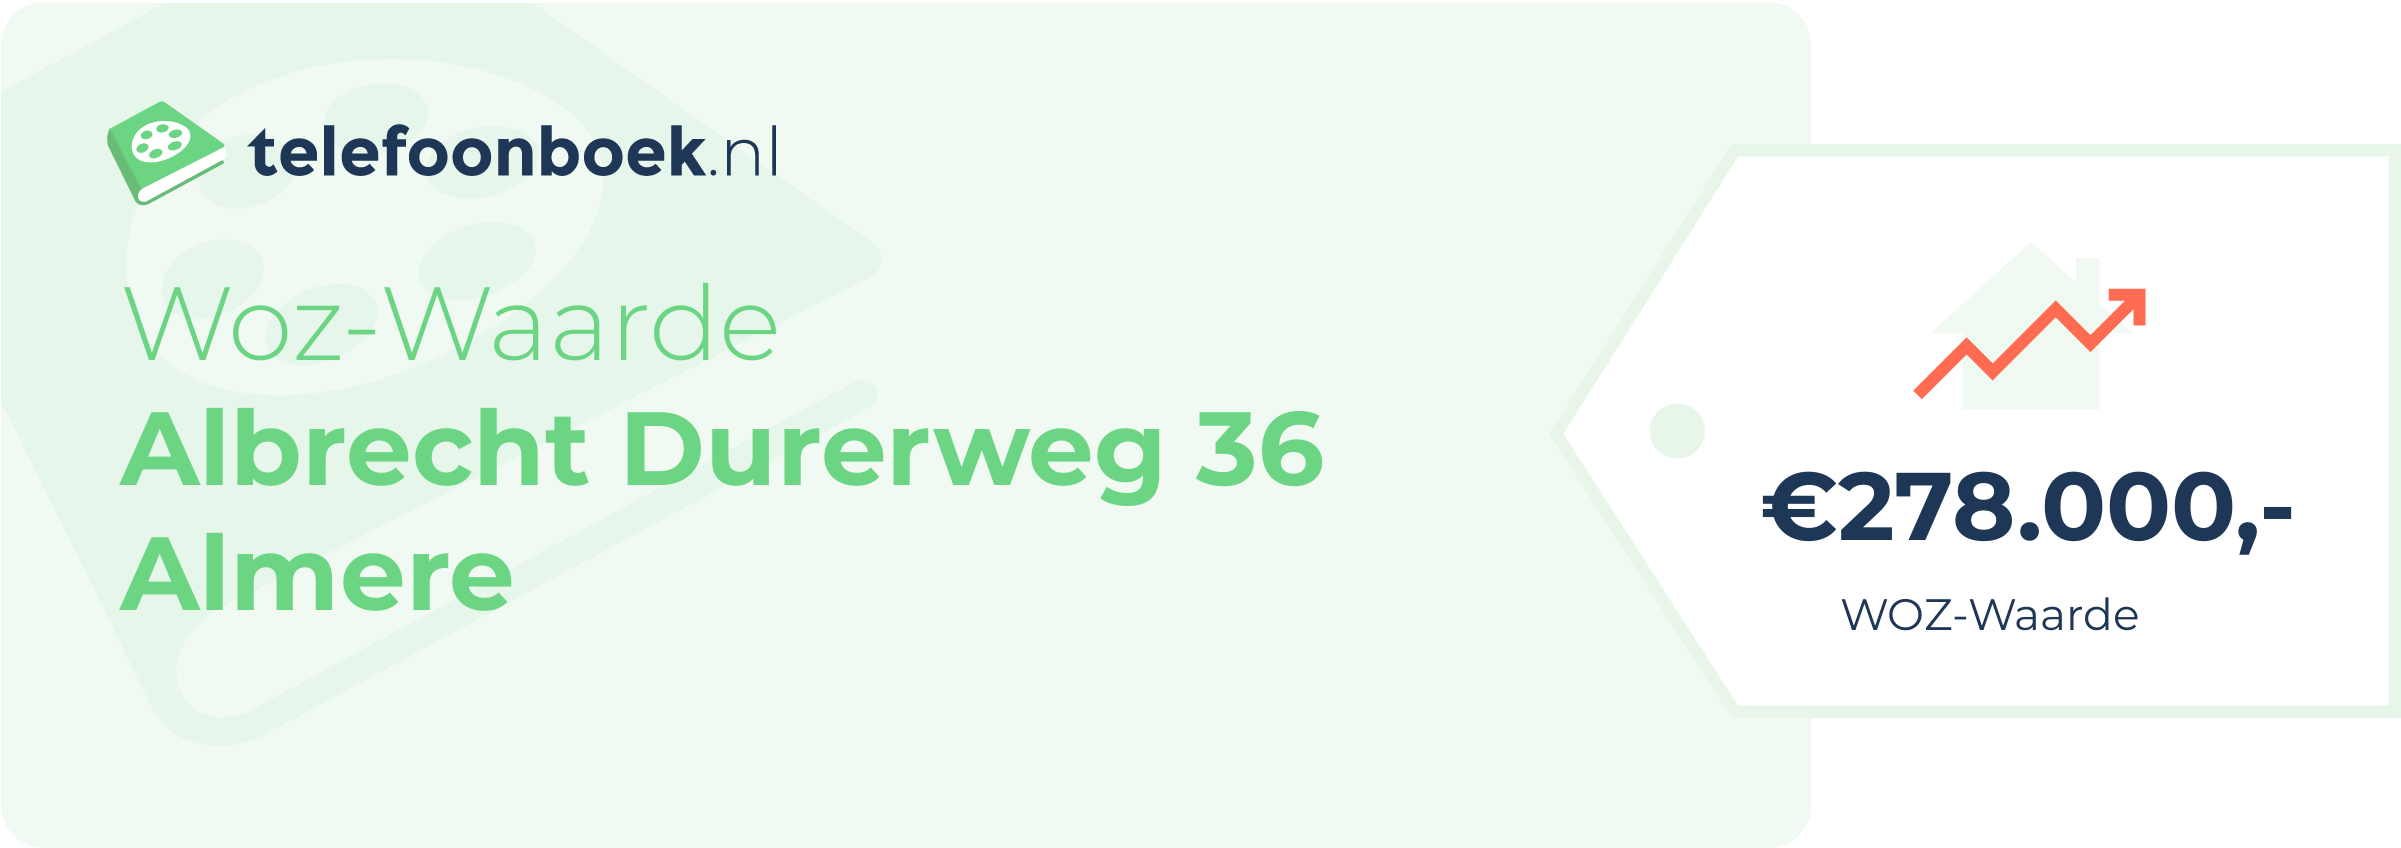 WOZ-waarde Albrecht Durerweg 36 Almere